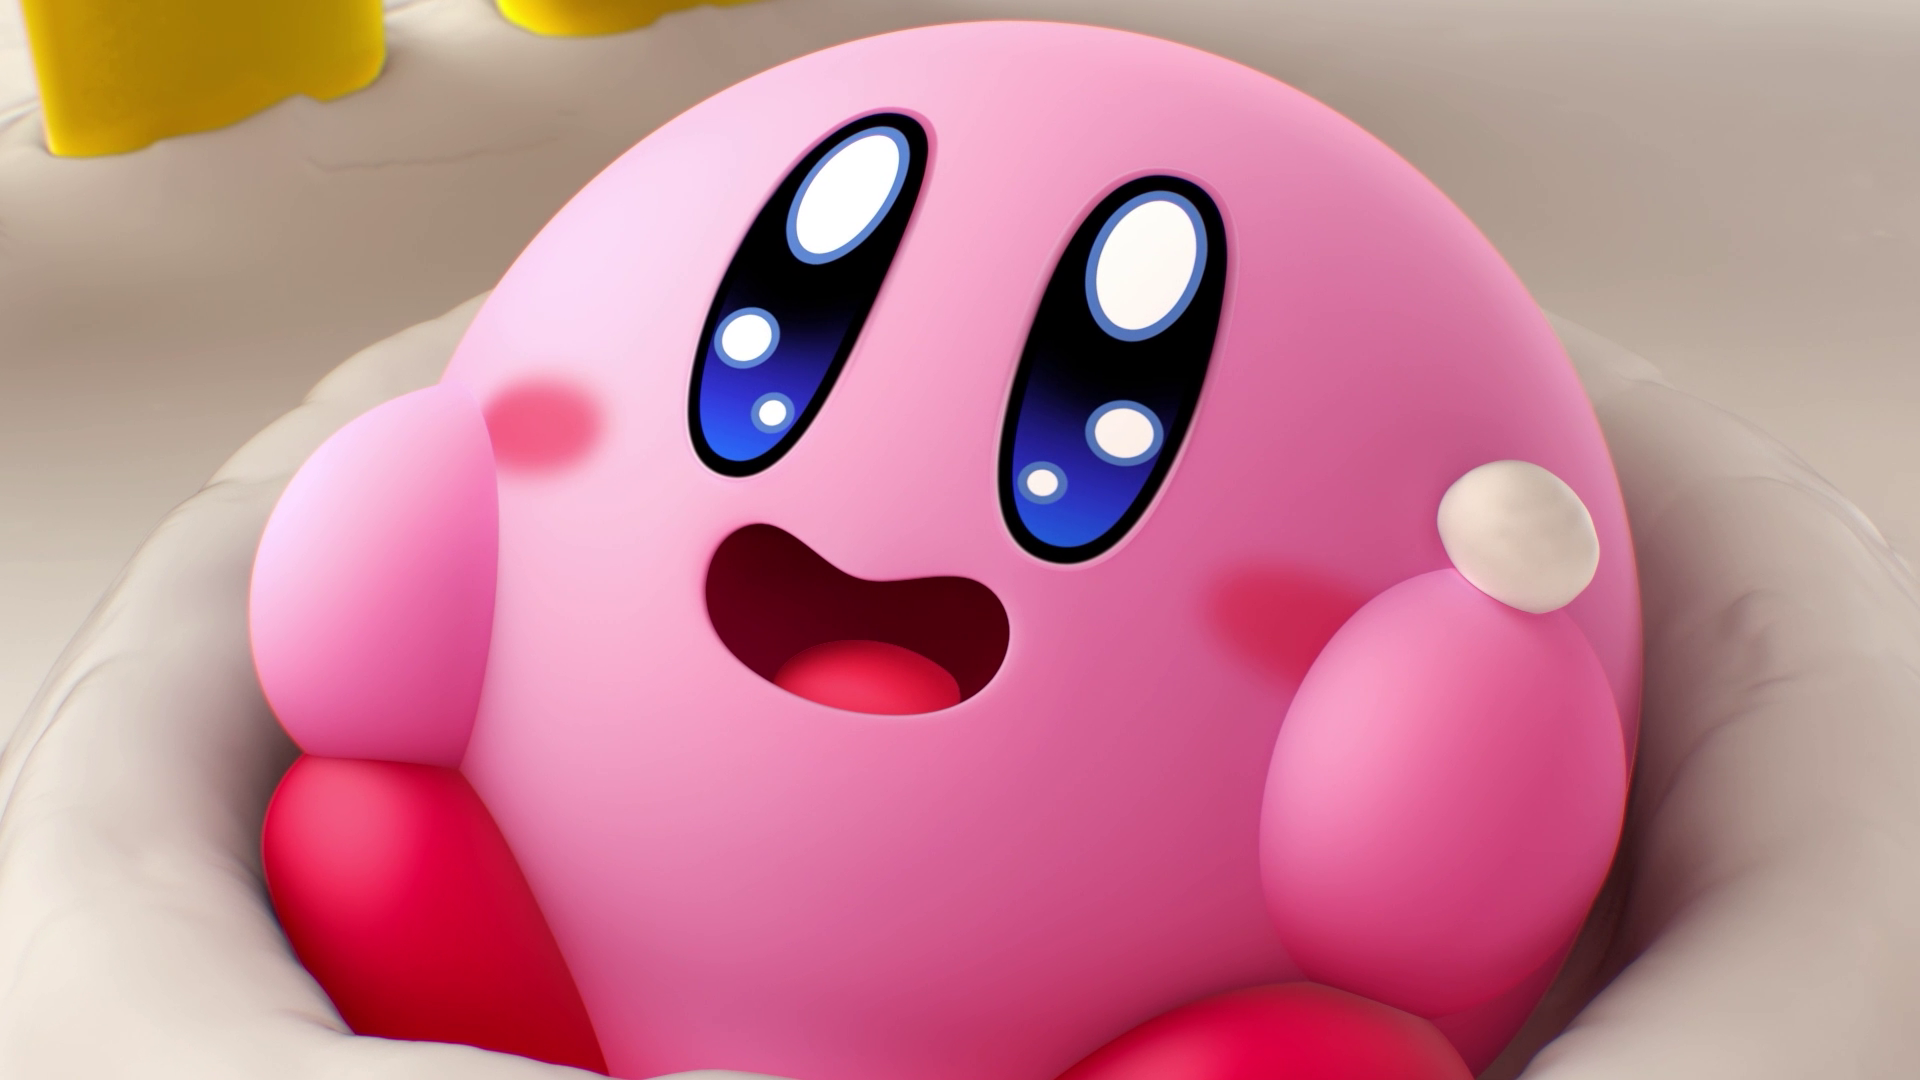 Imagen para Análisis de Kirby's Dream Buffet - Kirby por los pelos, party game pero poco